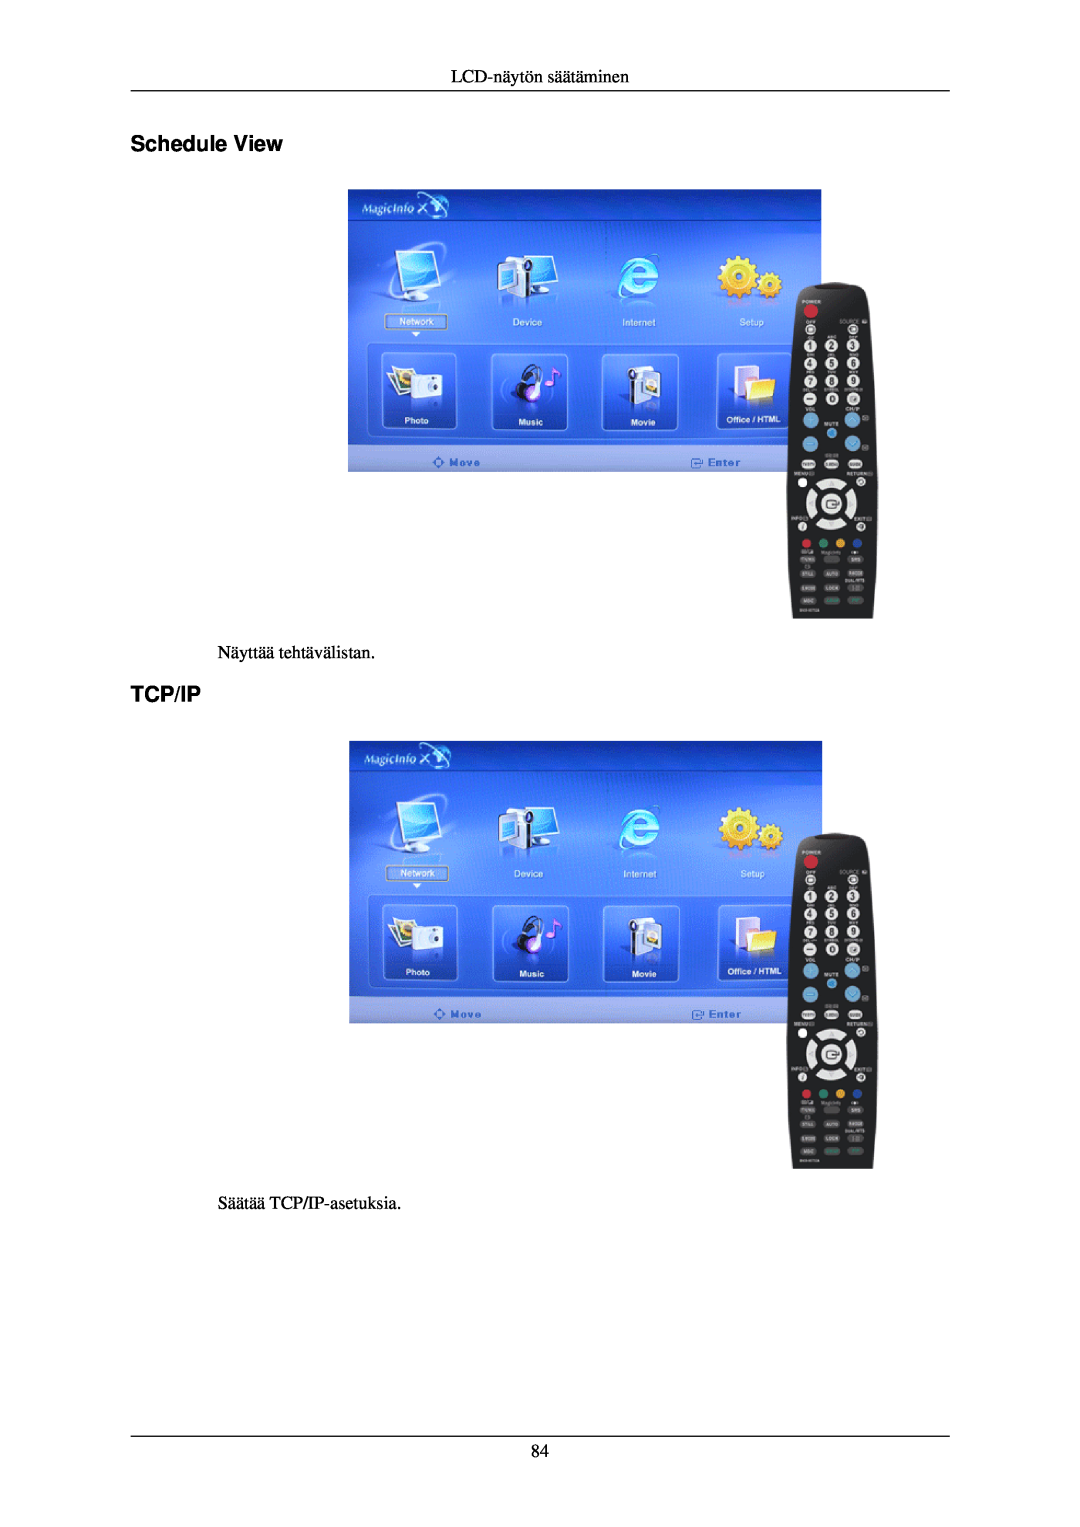 Samsung LH46TCUMBG/EN manual Schedule View, Tcp/Ip, LCD-näytön säätäminen, Näyttää tehtävälistan, Säätää TCP/IP-asetuksia 